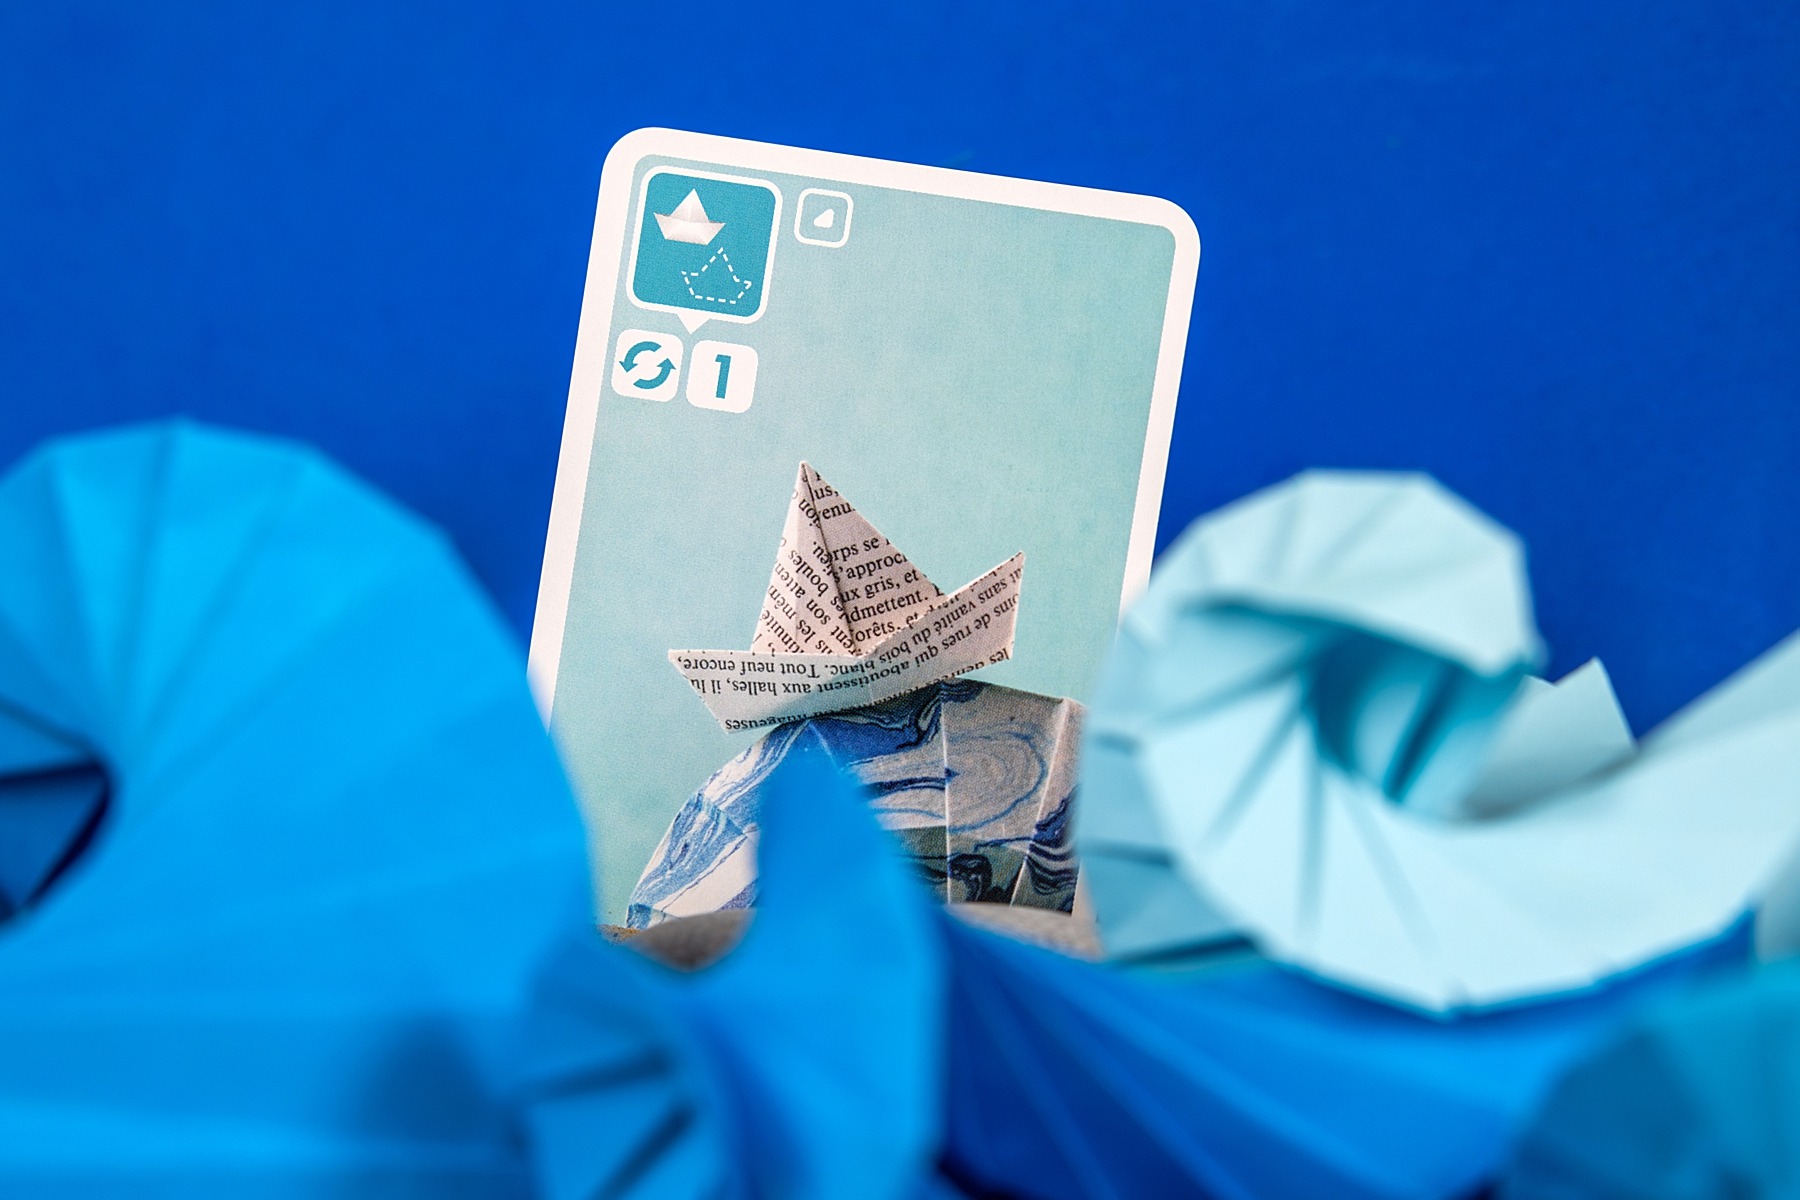 Sea salt & paper bombyx jeu de société boardgame